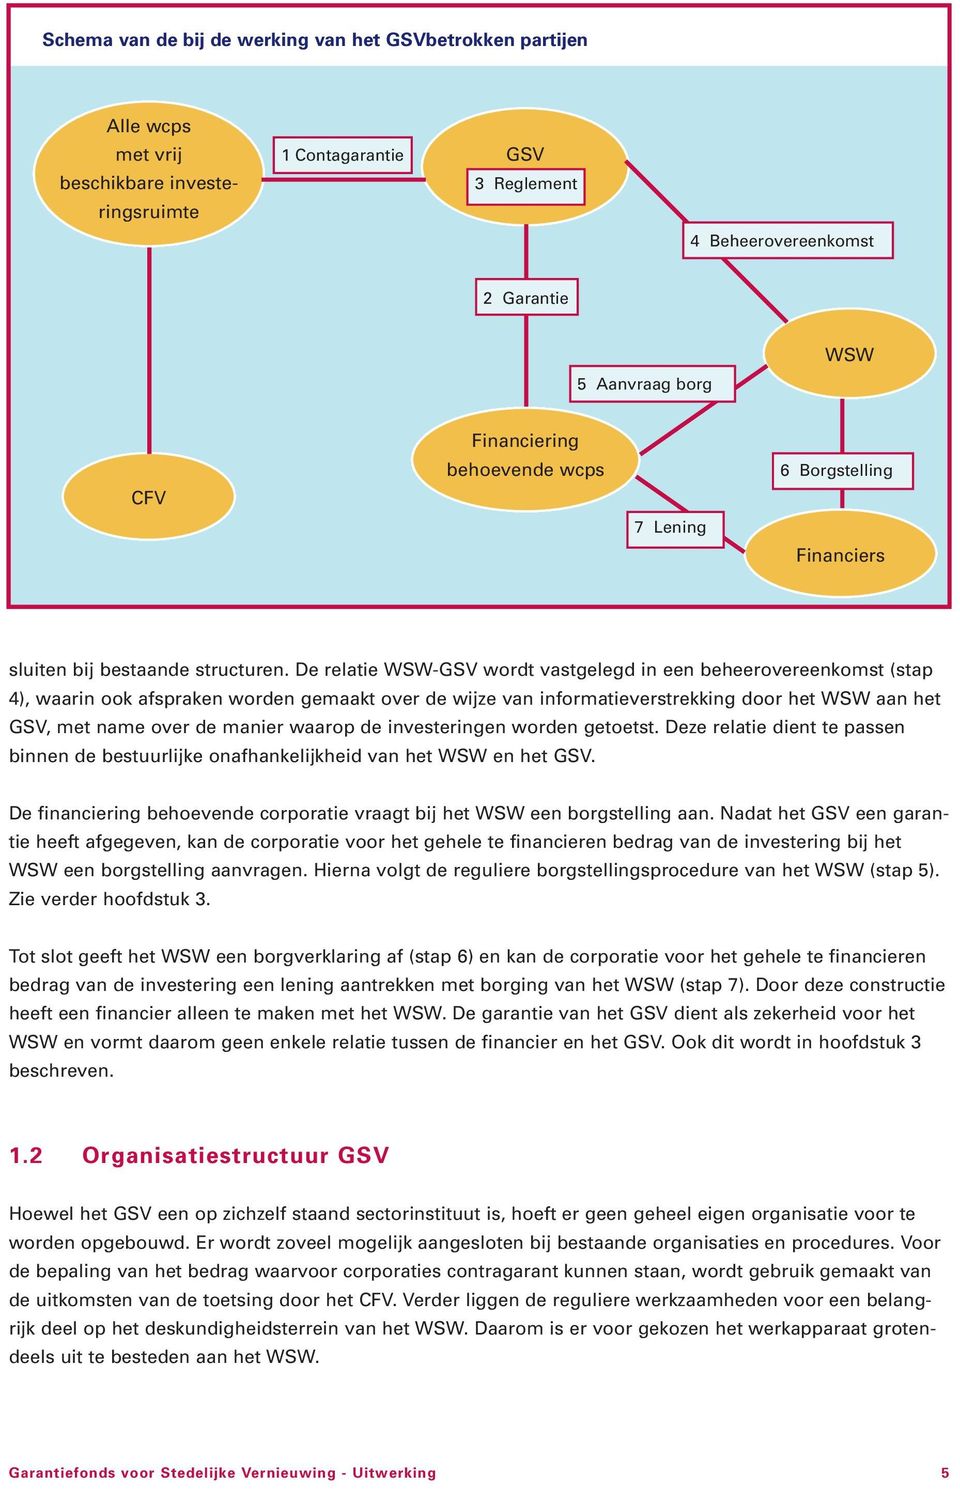 De relatie WSW-GSV wordt vastgelegd in een beheerovereenkomst (stap 4), waarin ook afspraken worden gemaakt over de wijze van informatieverstrekking door het WSW aan het GSV, met name over de manier